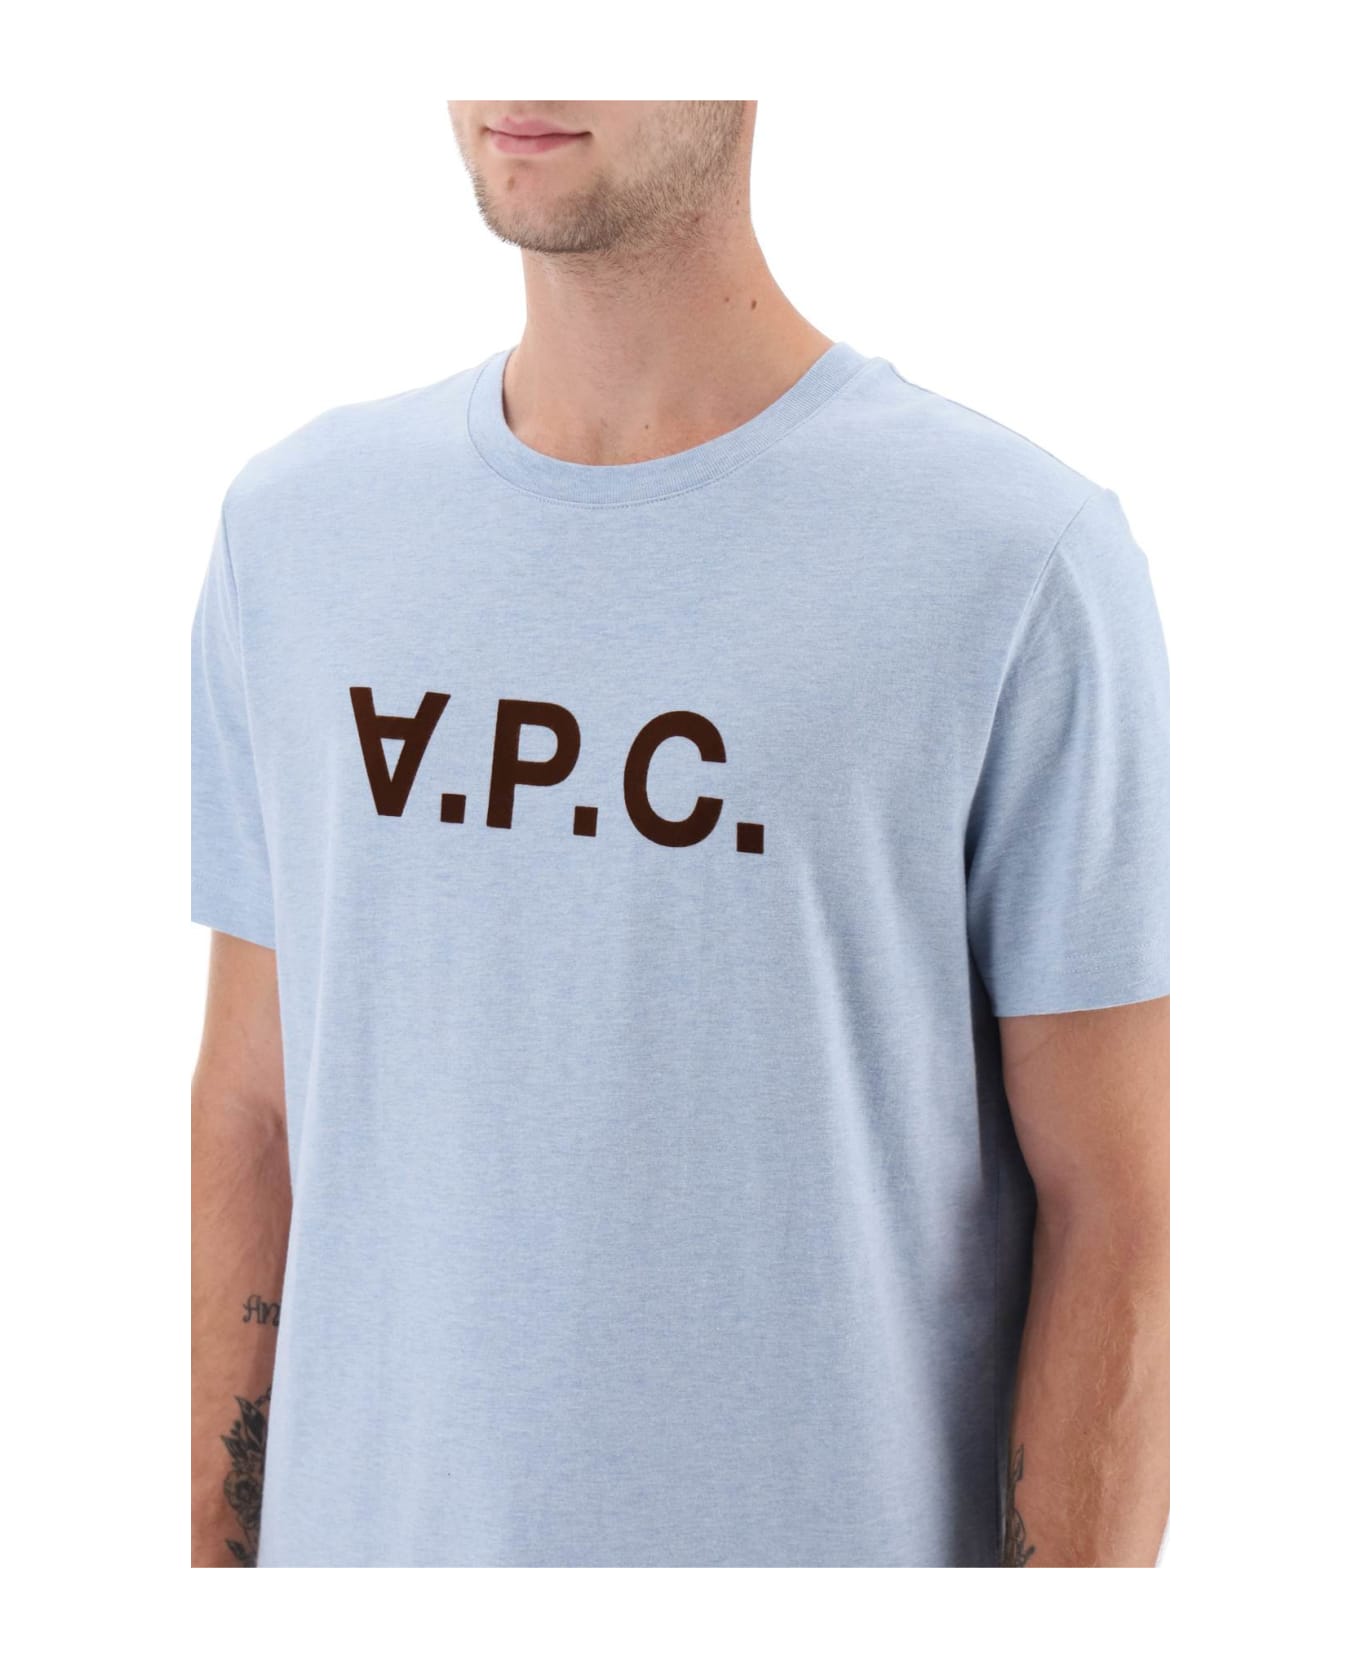 A.P.C. V.p.c. Logo T-shirt - INDIGO DELAVE シャツ